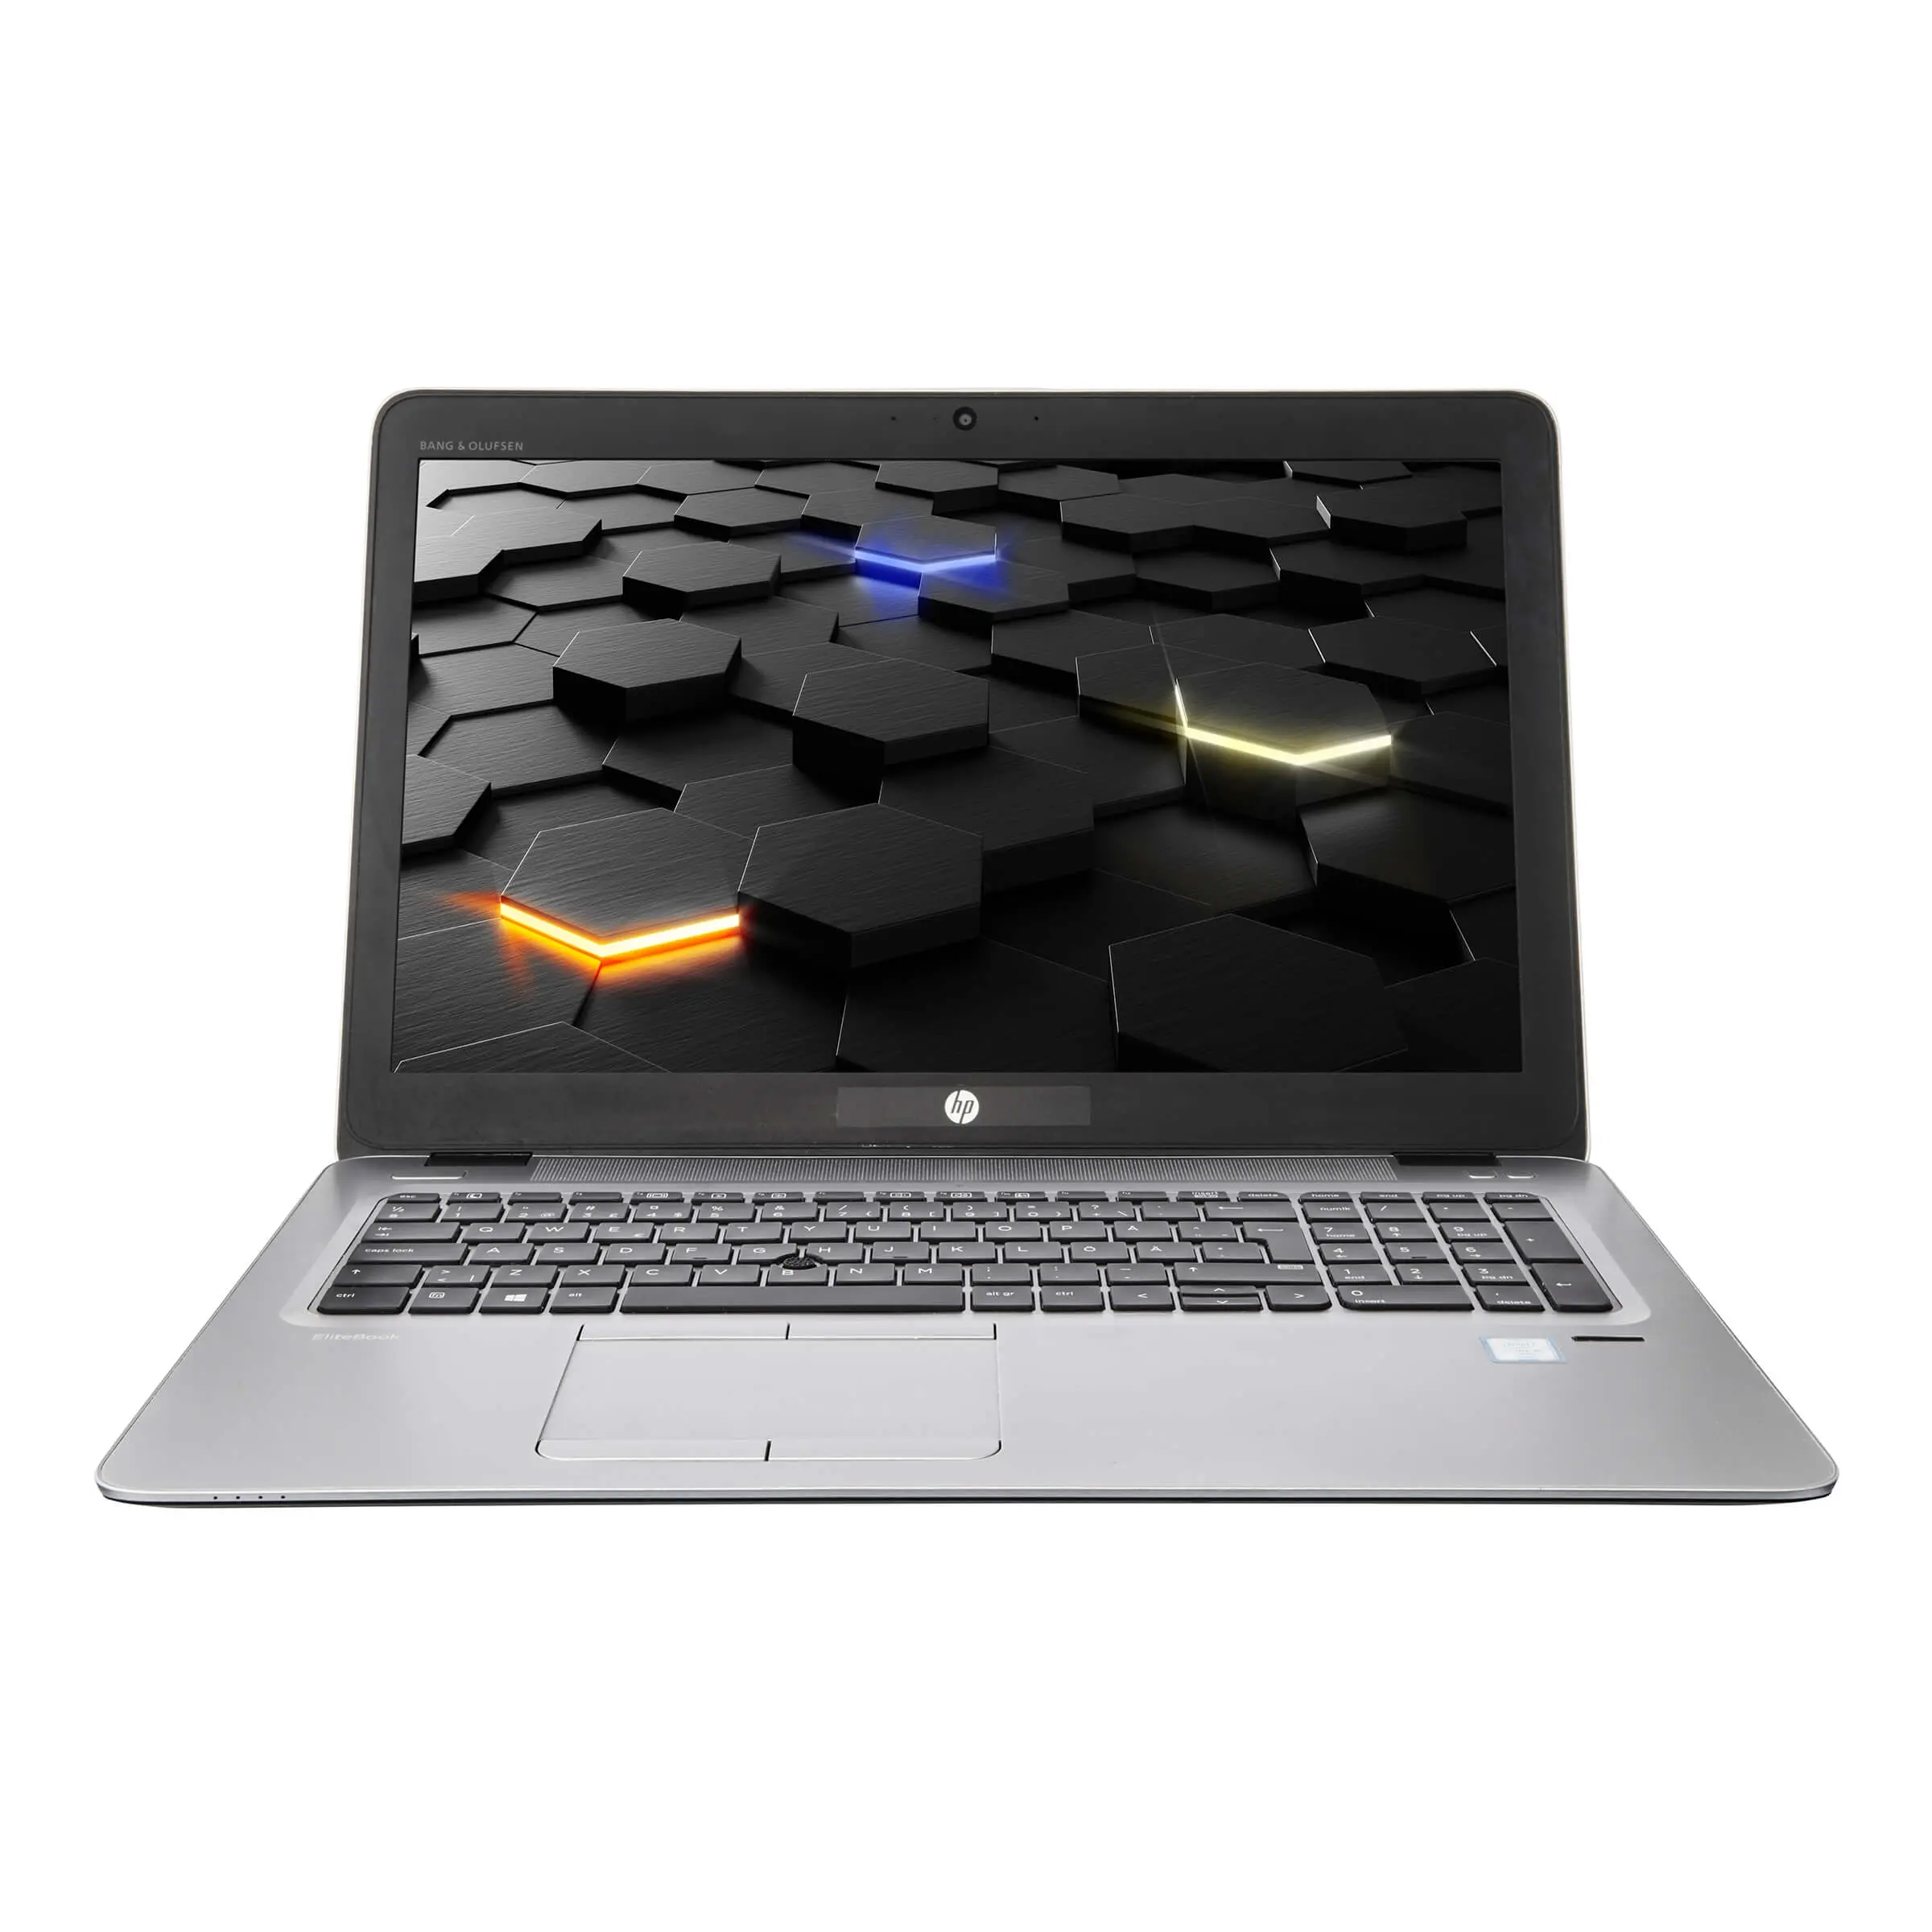 HP EliteBook 850 G3, i5, 15.6 Zoll Full-HD IPS, 16GB, 250GB SSD + 2TB HDD, beleuchtete Tastatur, Windows 10 Pro